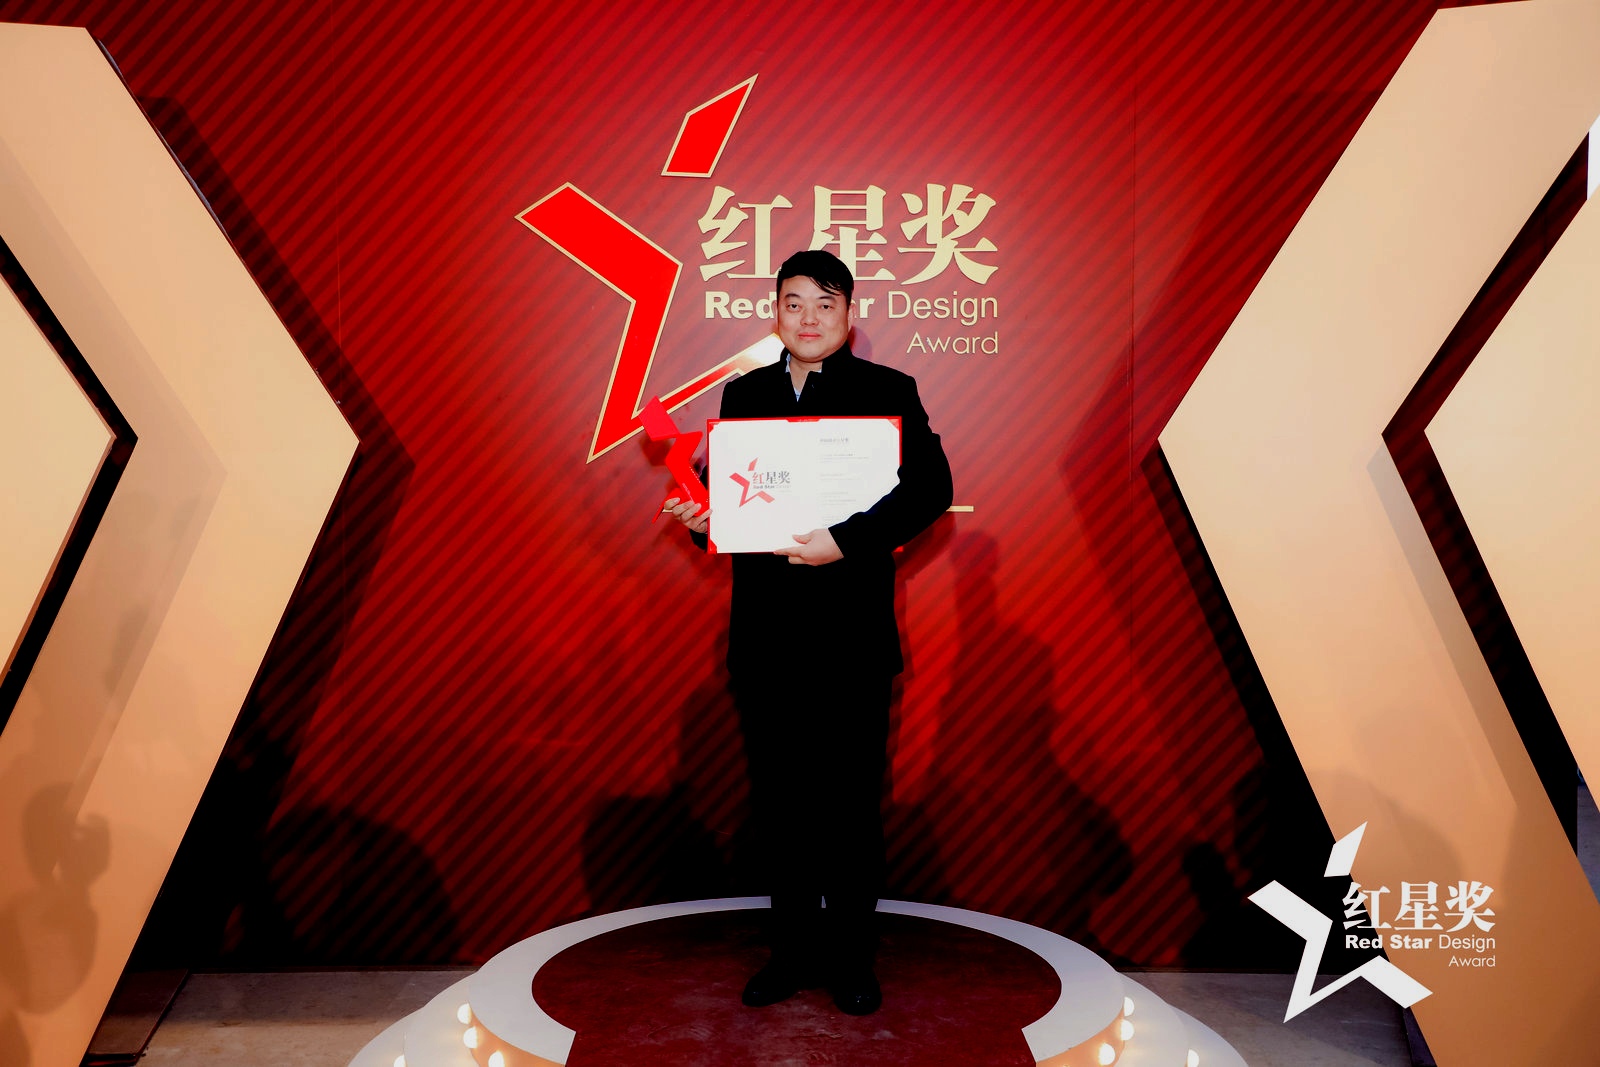 元征X-431 移动诊断中心喜提中国设计界“奥斯卡”红星奖